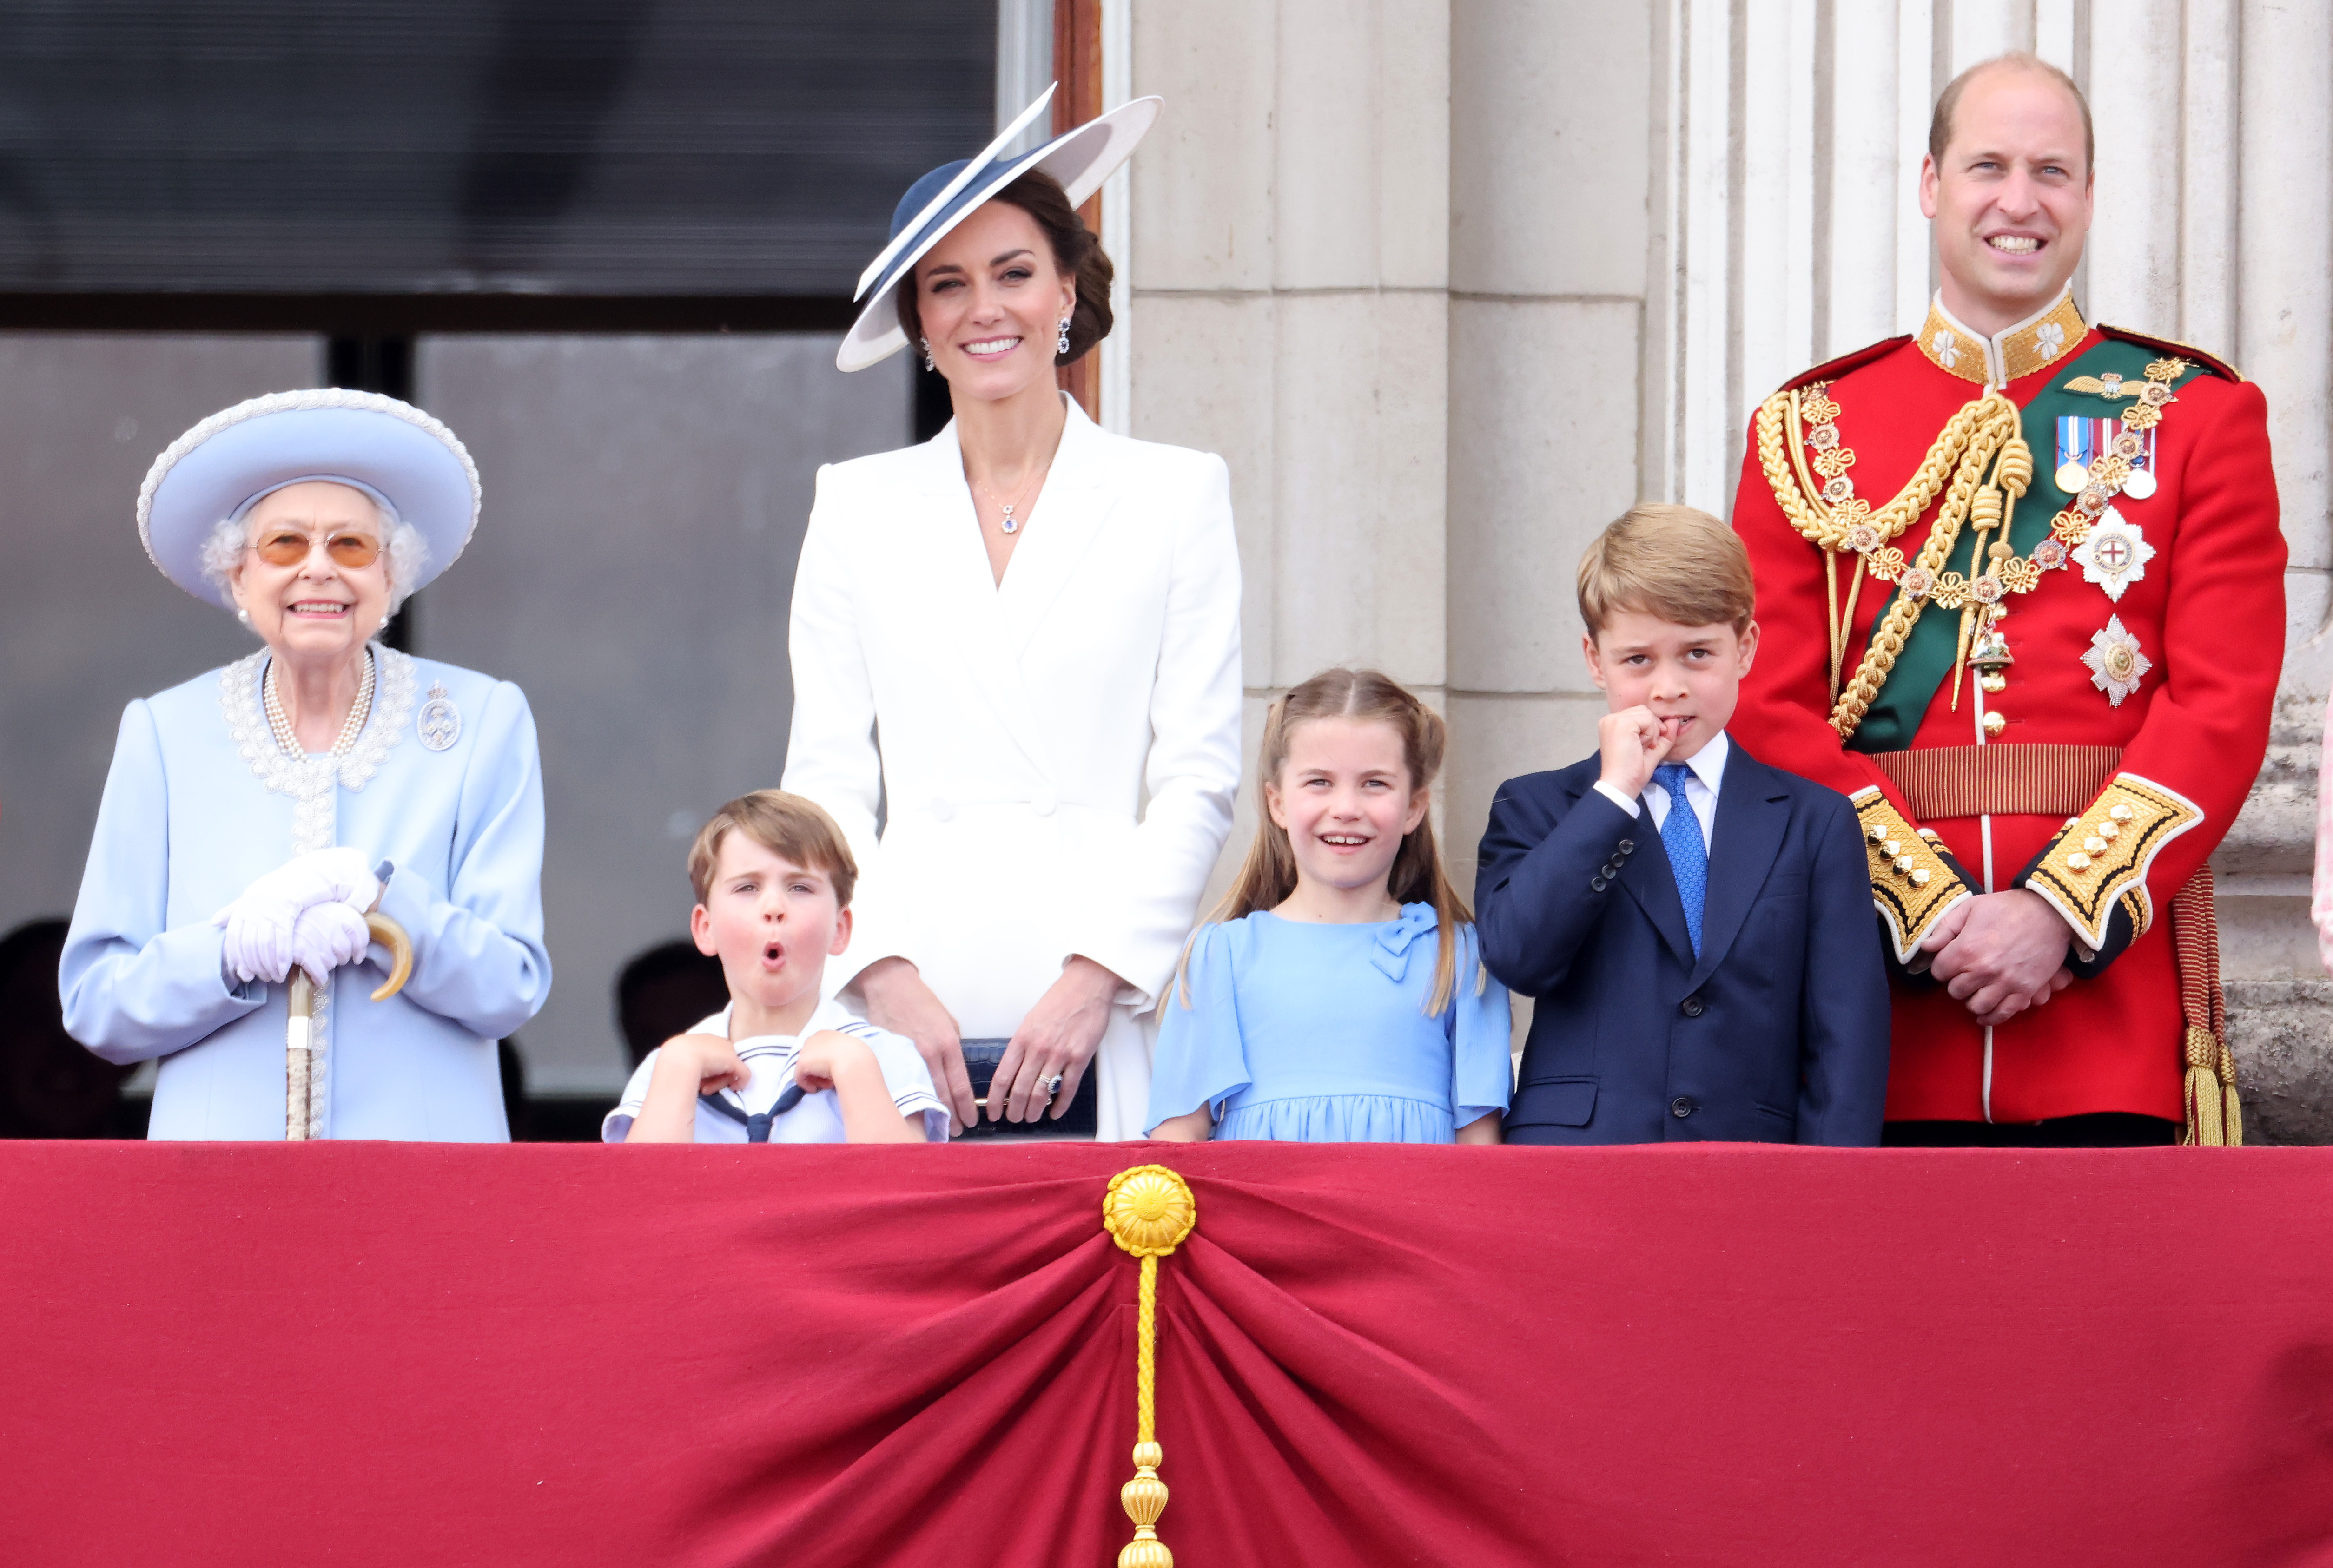 II. Erzsébet királynő, Katalin hercegné, Vilmos herceg és a gyerekeik, György herceg, Sarolta hercegnő és Lajos herceg. a Buckingham Palota erkélyén a Trooping The Colour ünnepségen.